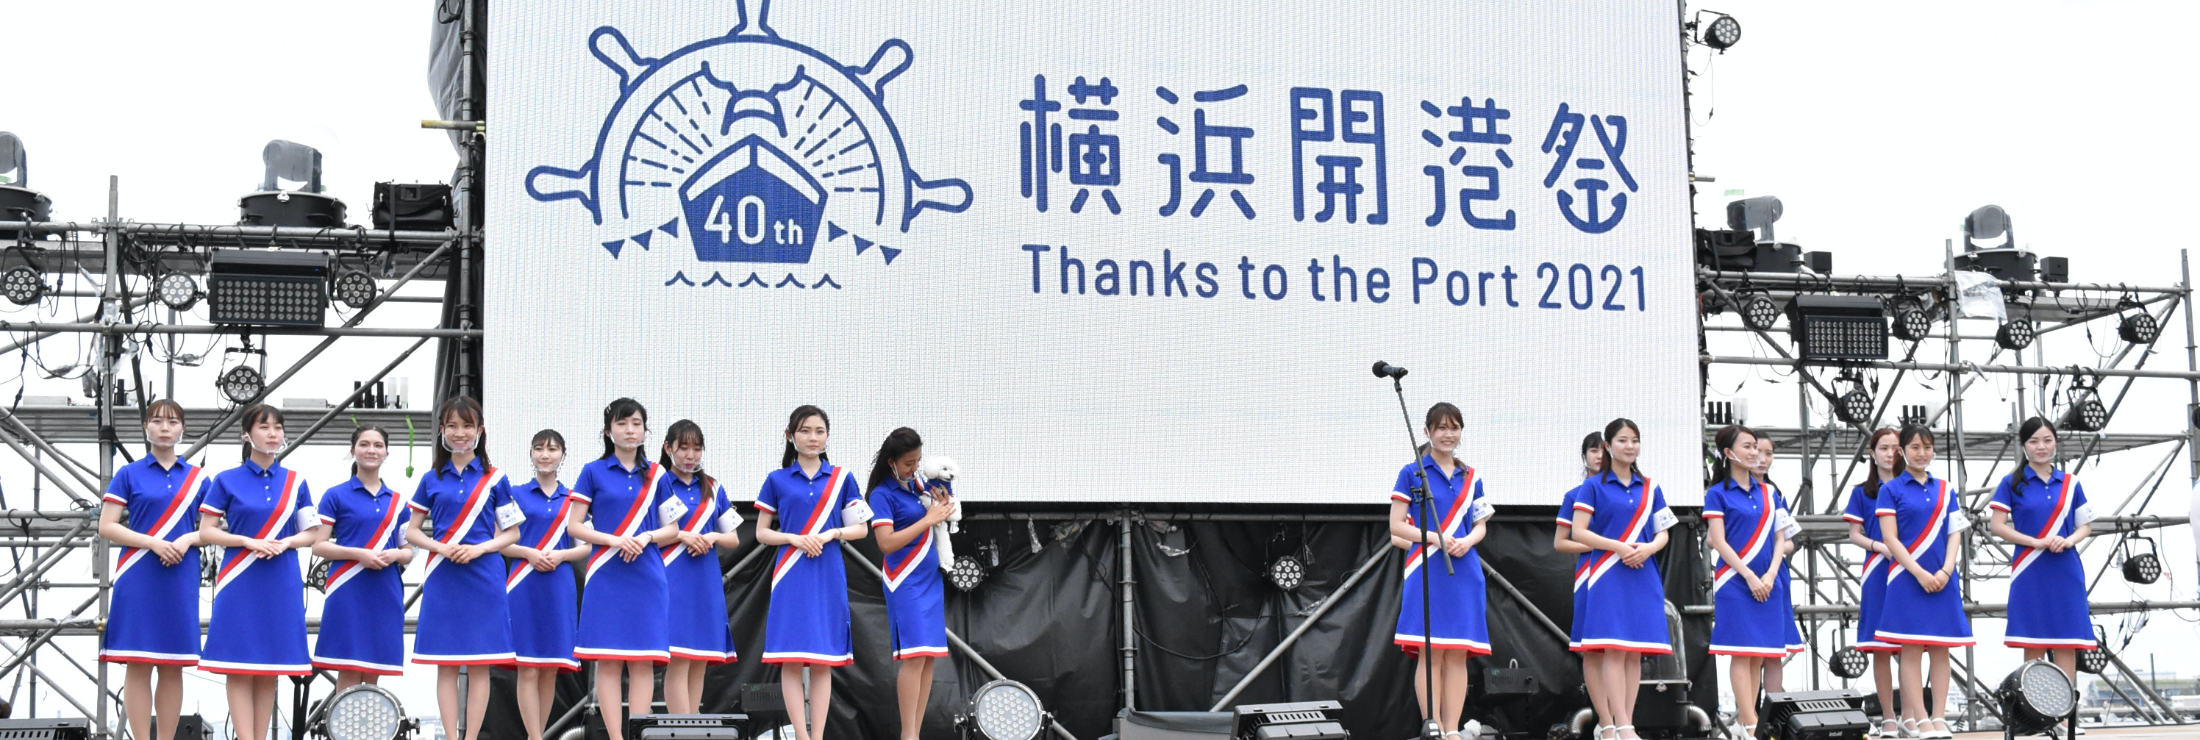 横浜青年会議所/横浜開港祭40周年